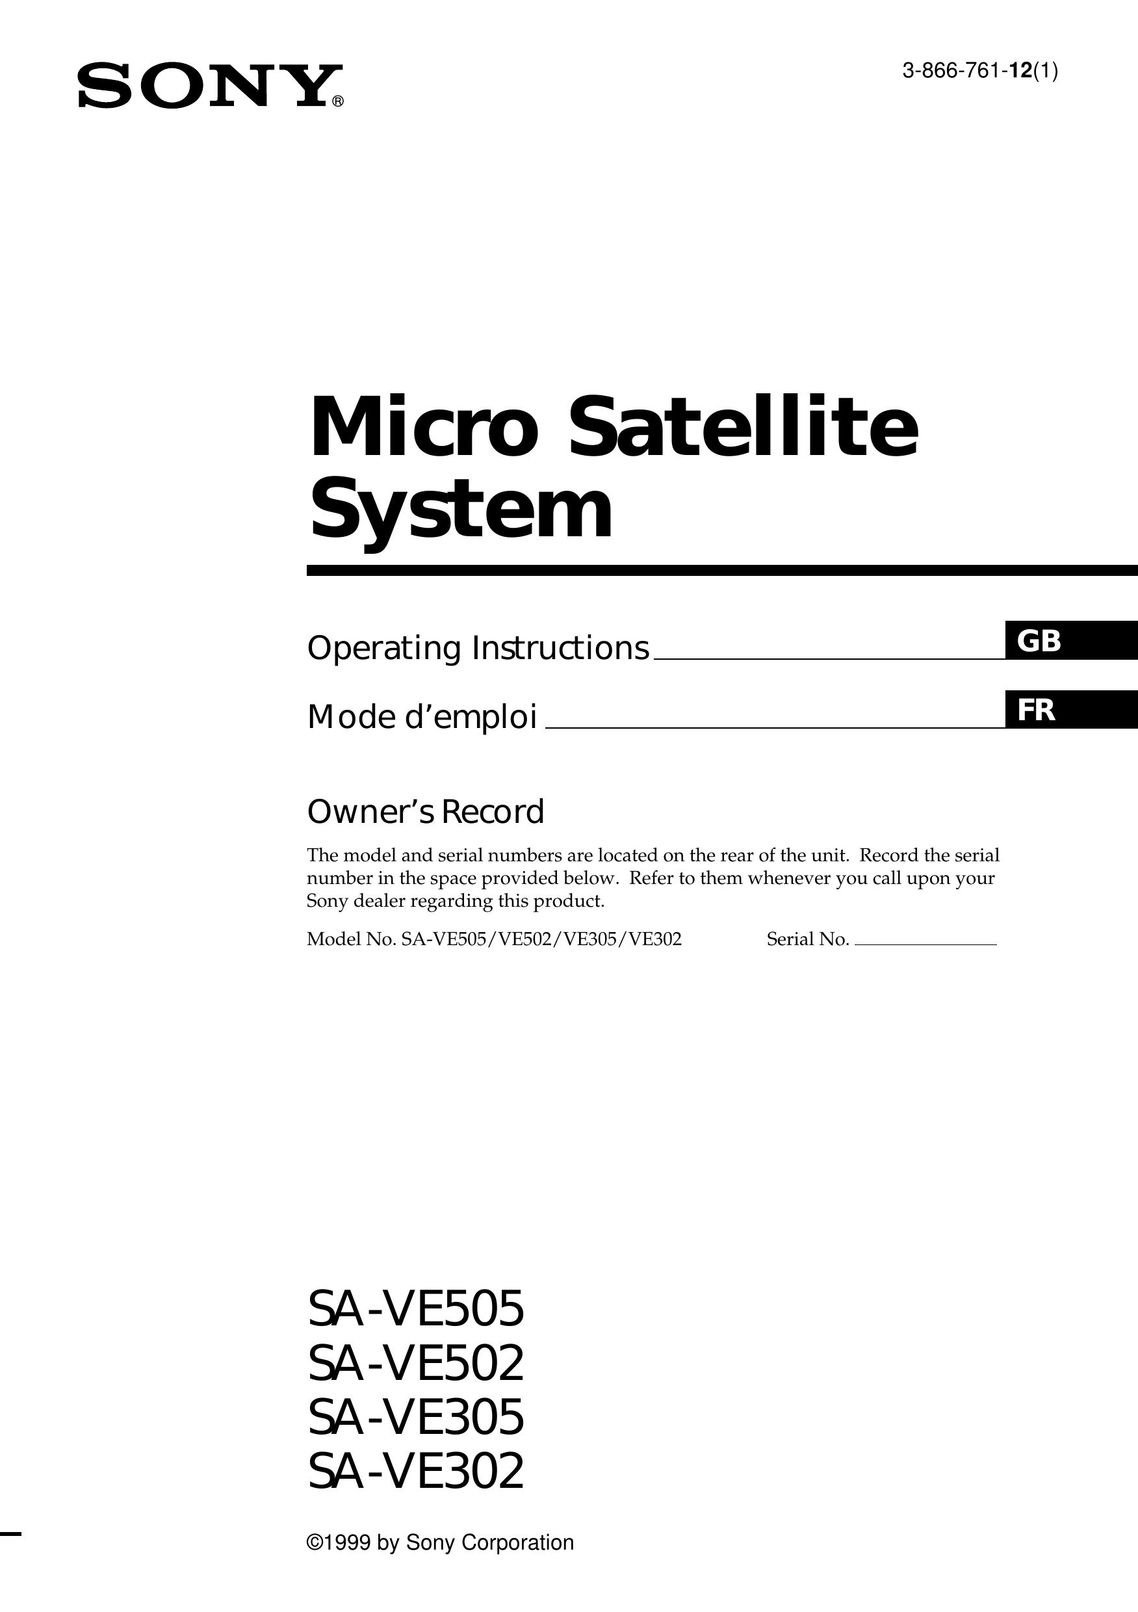 Sony SA-VE505 Satellite TV System User Manual